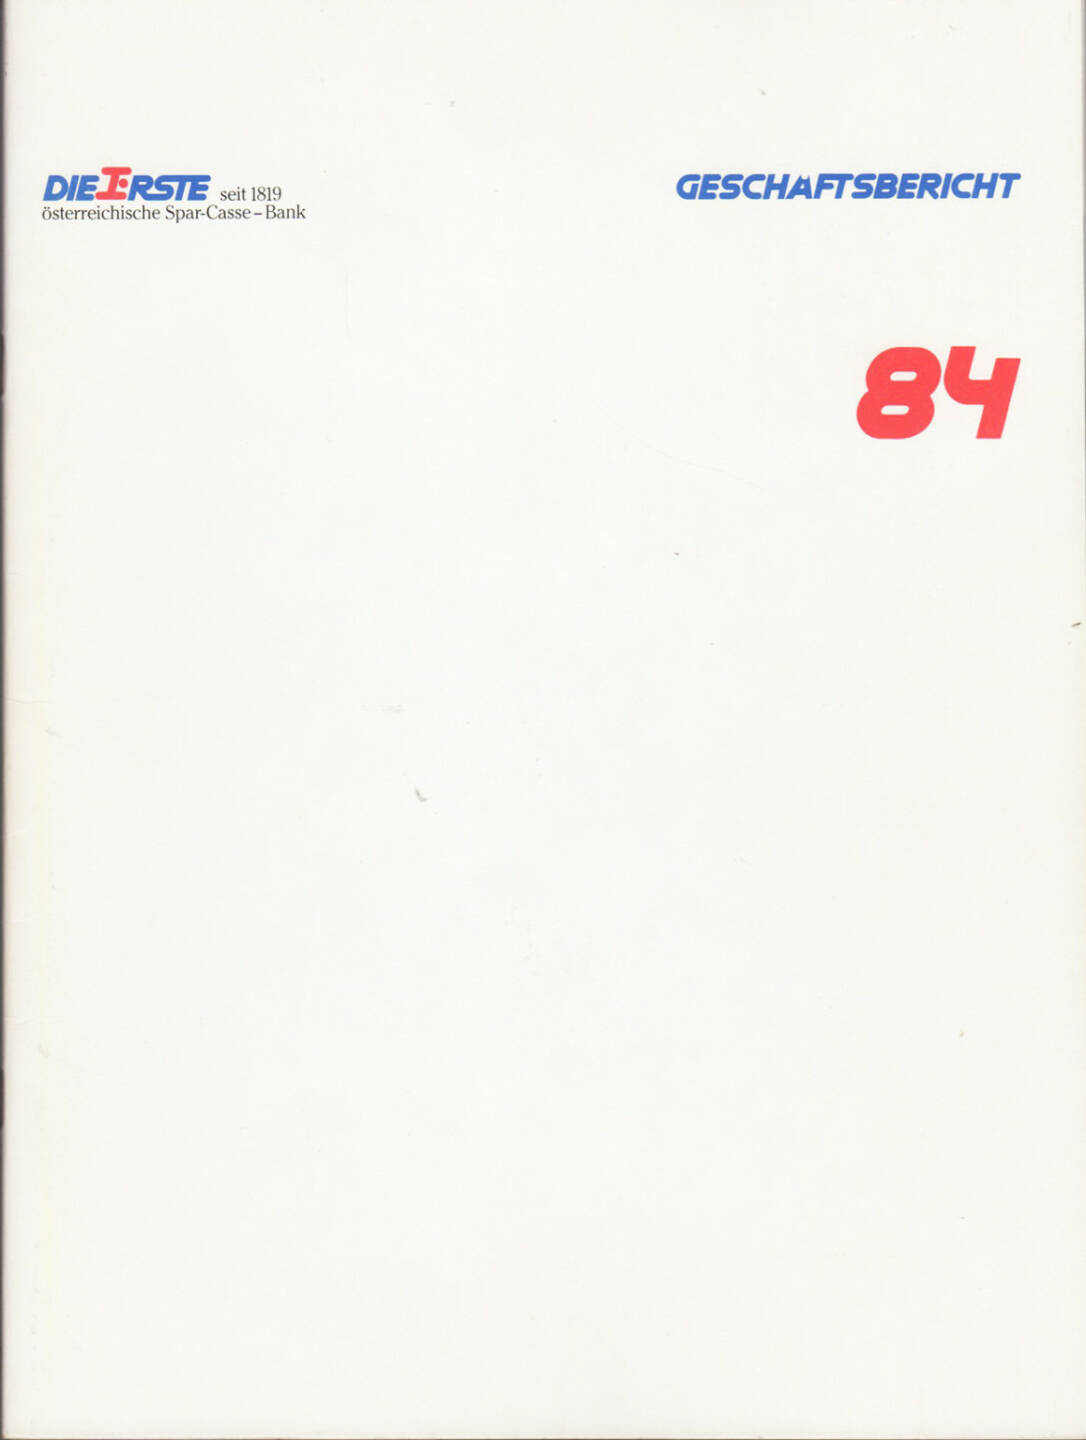 ERSTE österreichische Spar-Casse - Bank Geschäftsbericht 1984 - http://boerse-social.com/financebooks/show/erste_bank_geschaftsbericht_1984